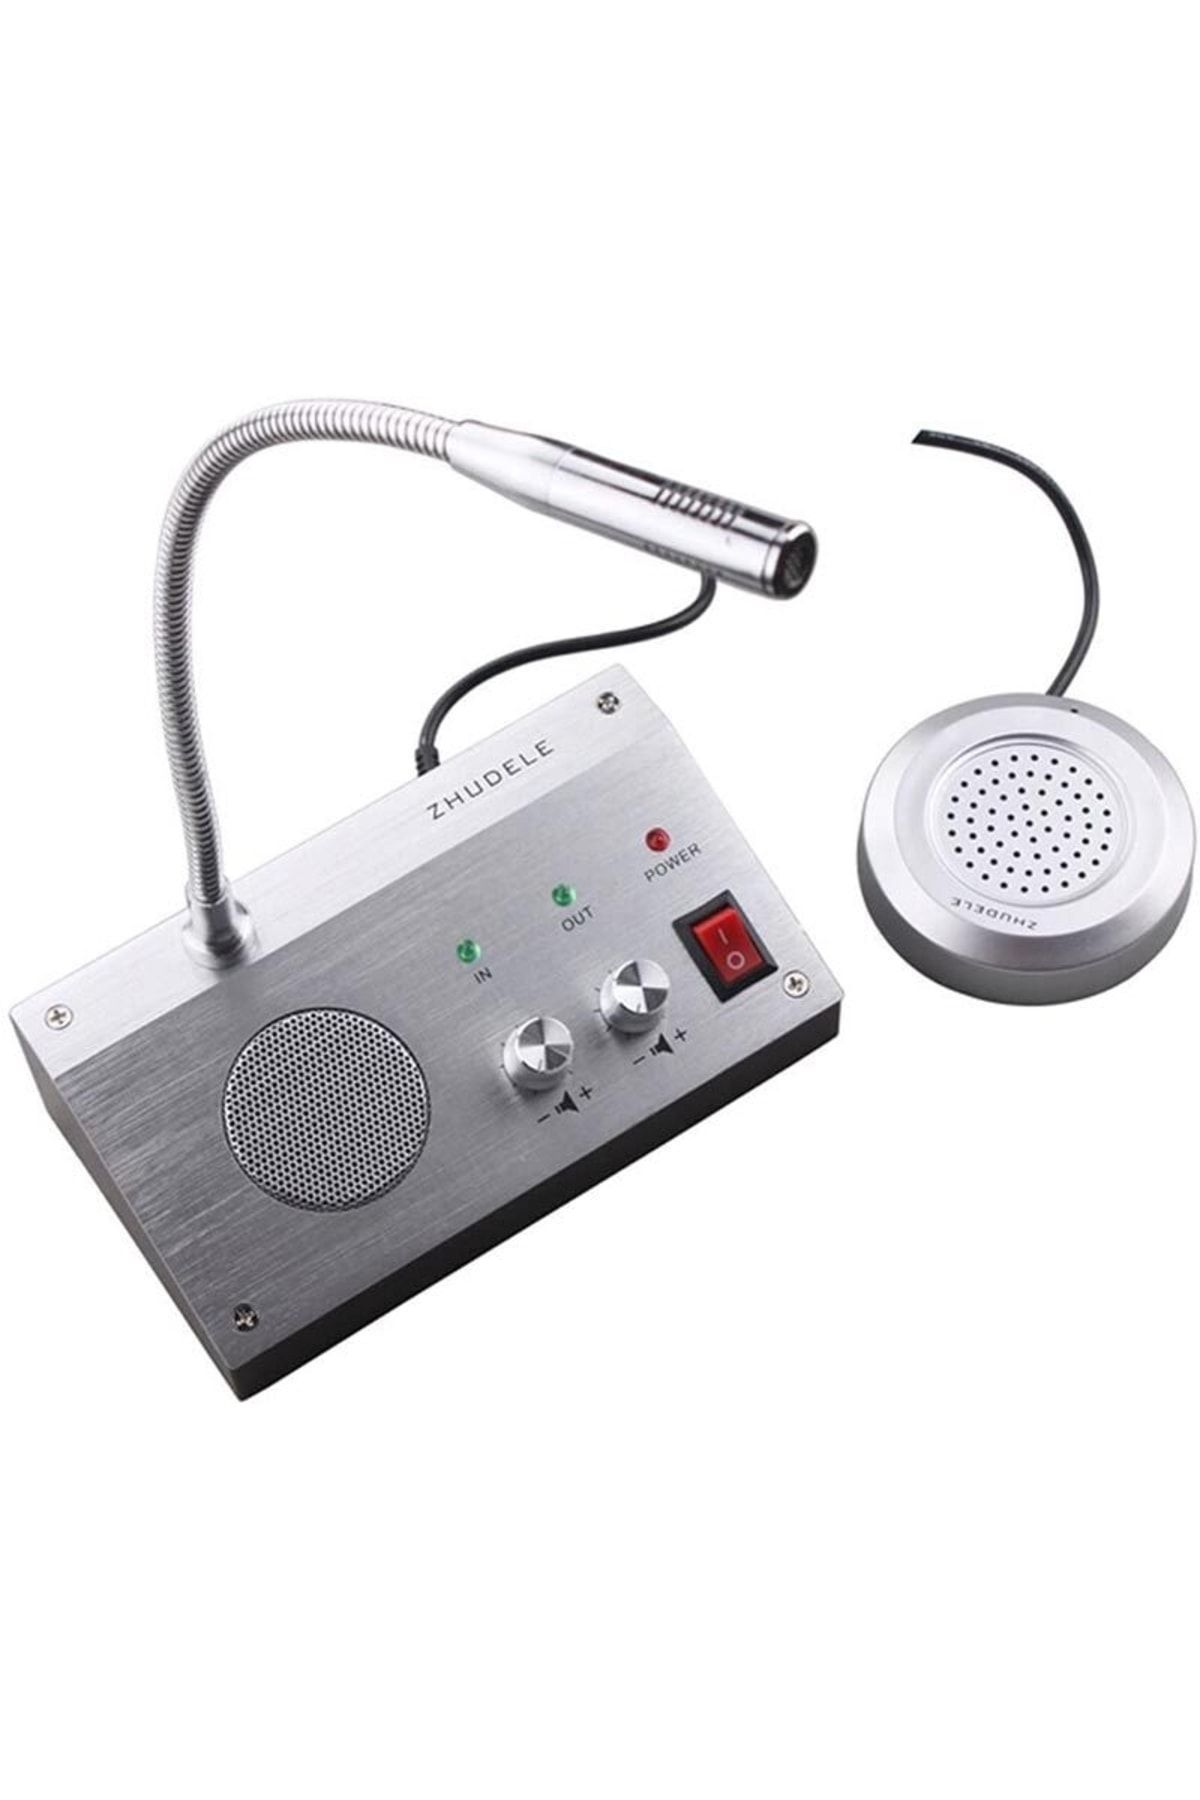 Higway Magıcvoıce Mv-2399 Wındow Intercom Çift Yönlü Vezne Gişe Mikrofon Seti